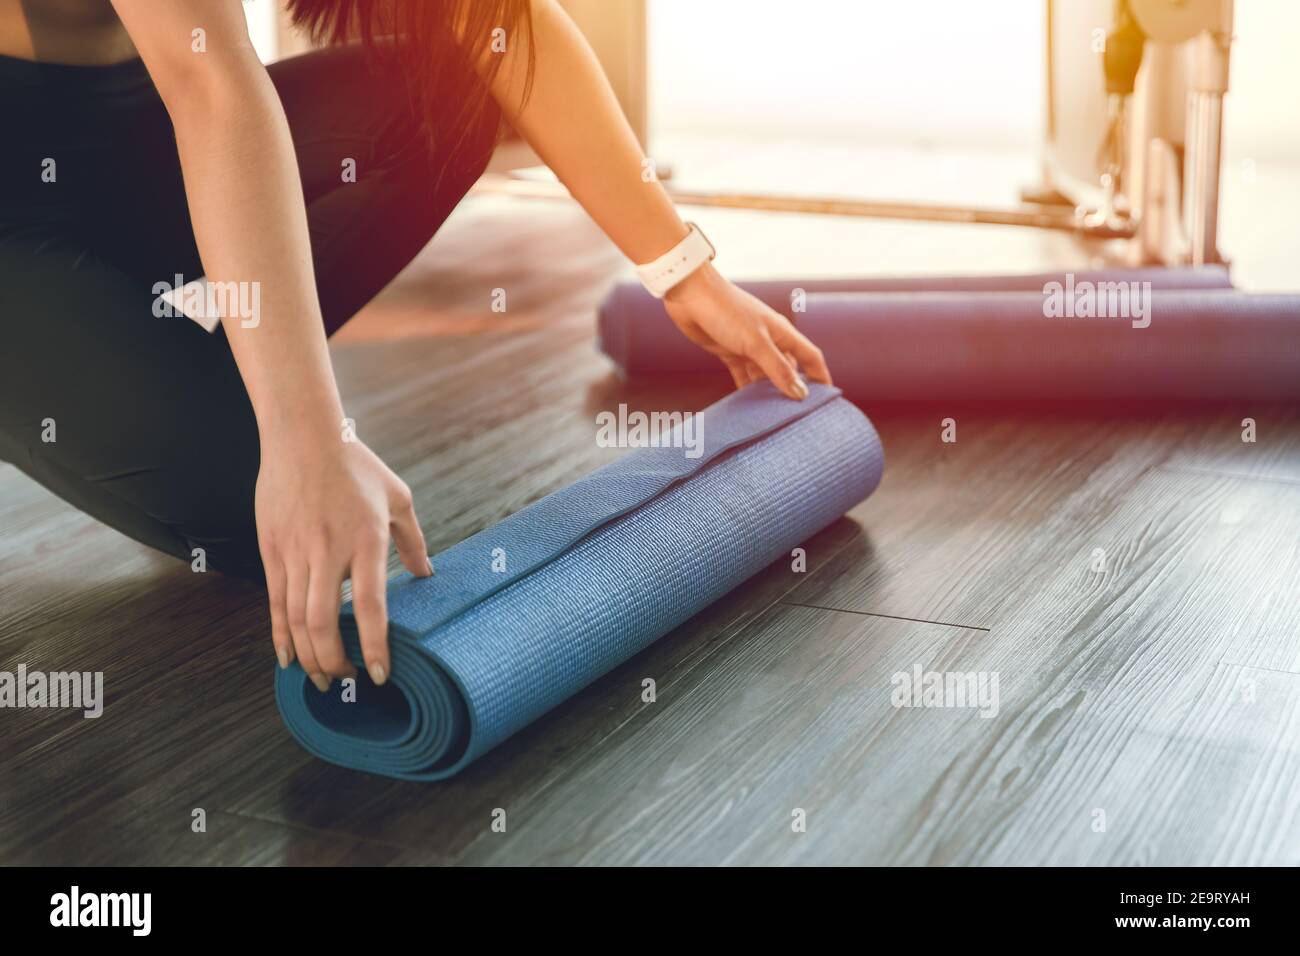 Colchoneta de yoga, mujer sana que se enrolla la hoja de goma del ejercicio para comenzar la clase en el club del deporte Foto de stock